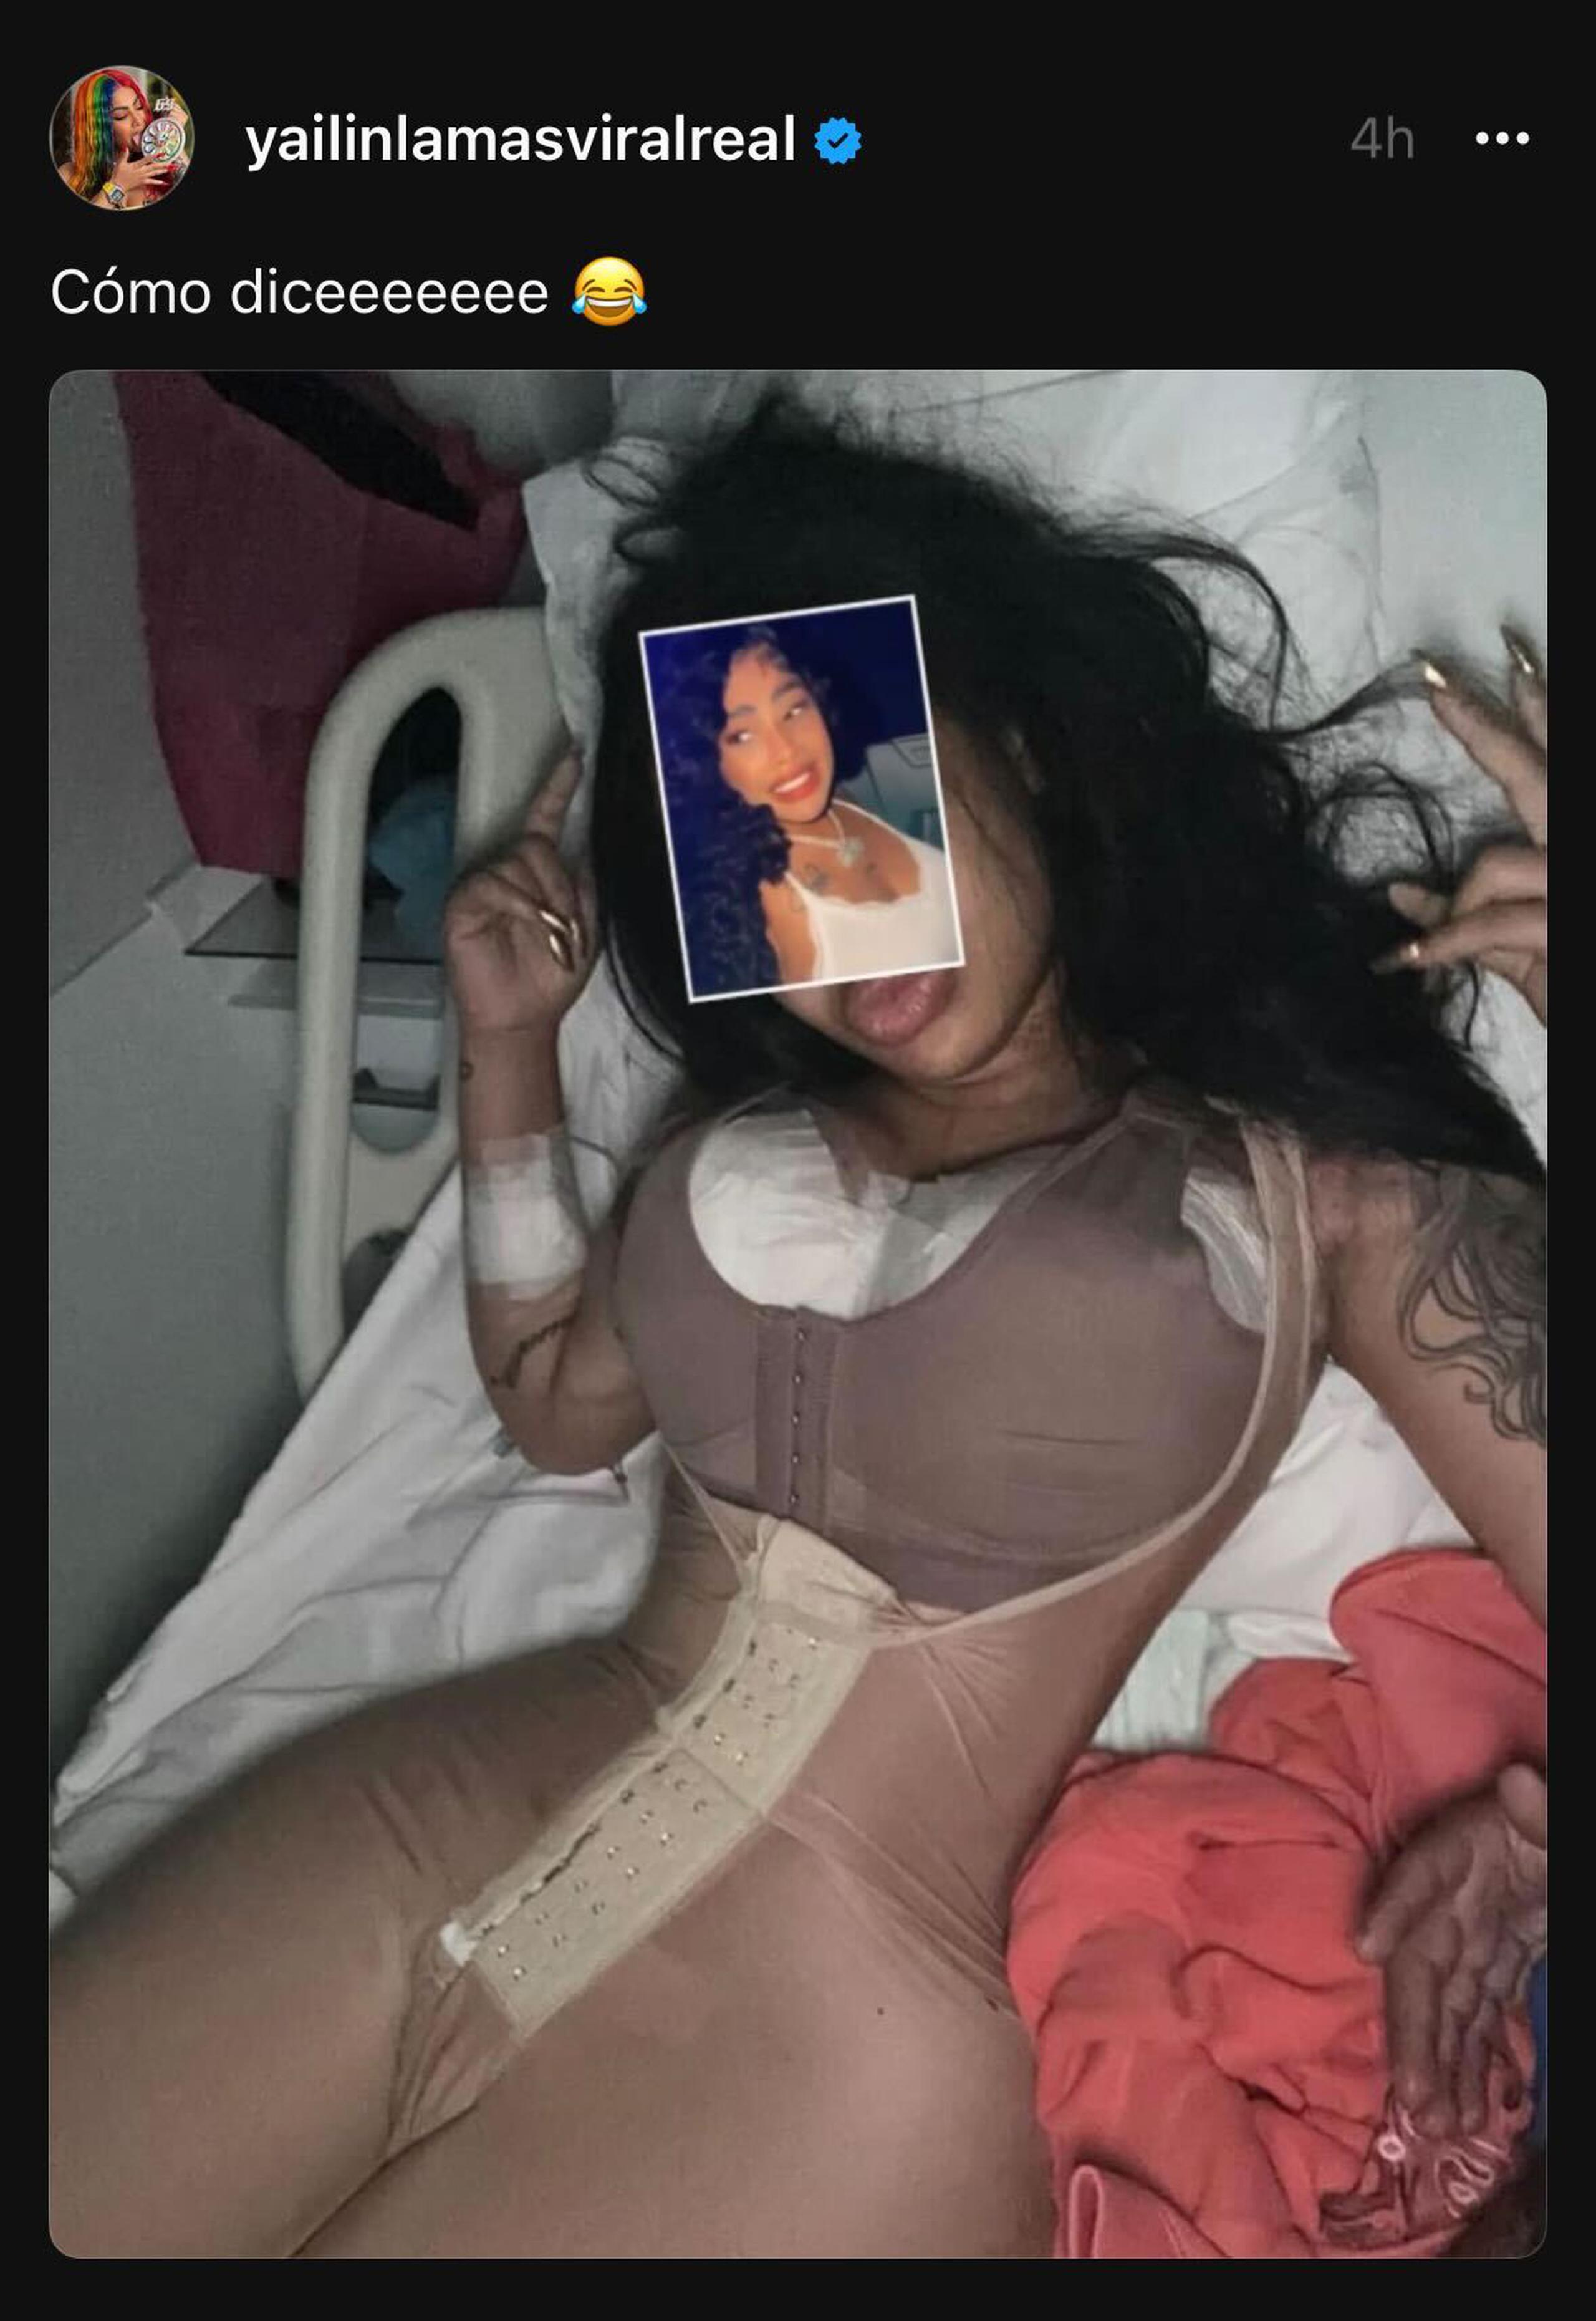 Yailin "La más viral" compartió su cuerpo a días de haber pasado por una cirugía.